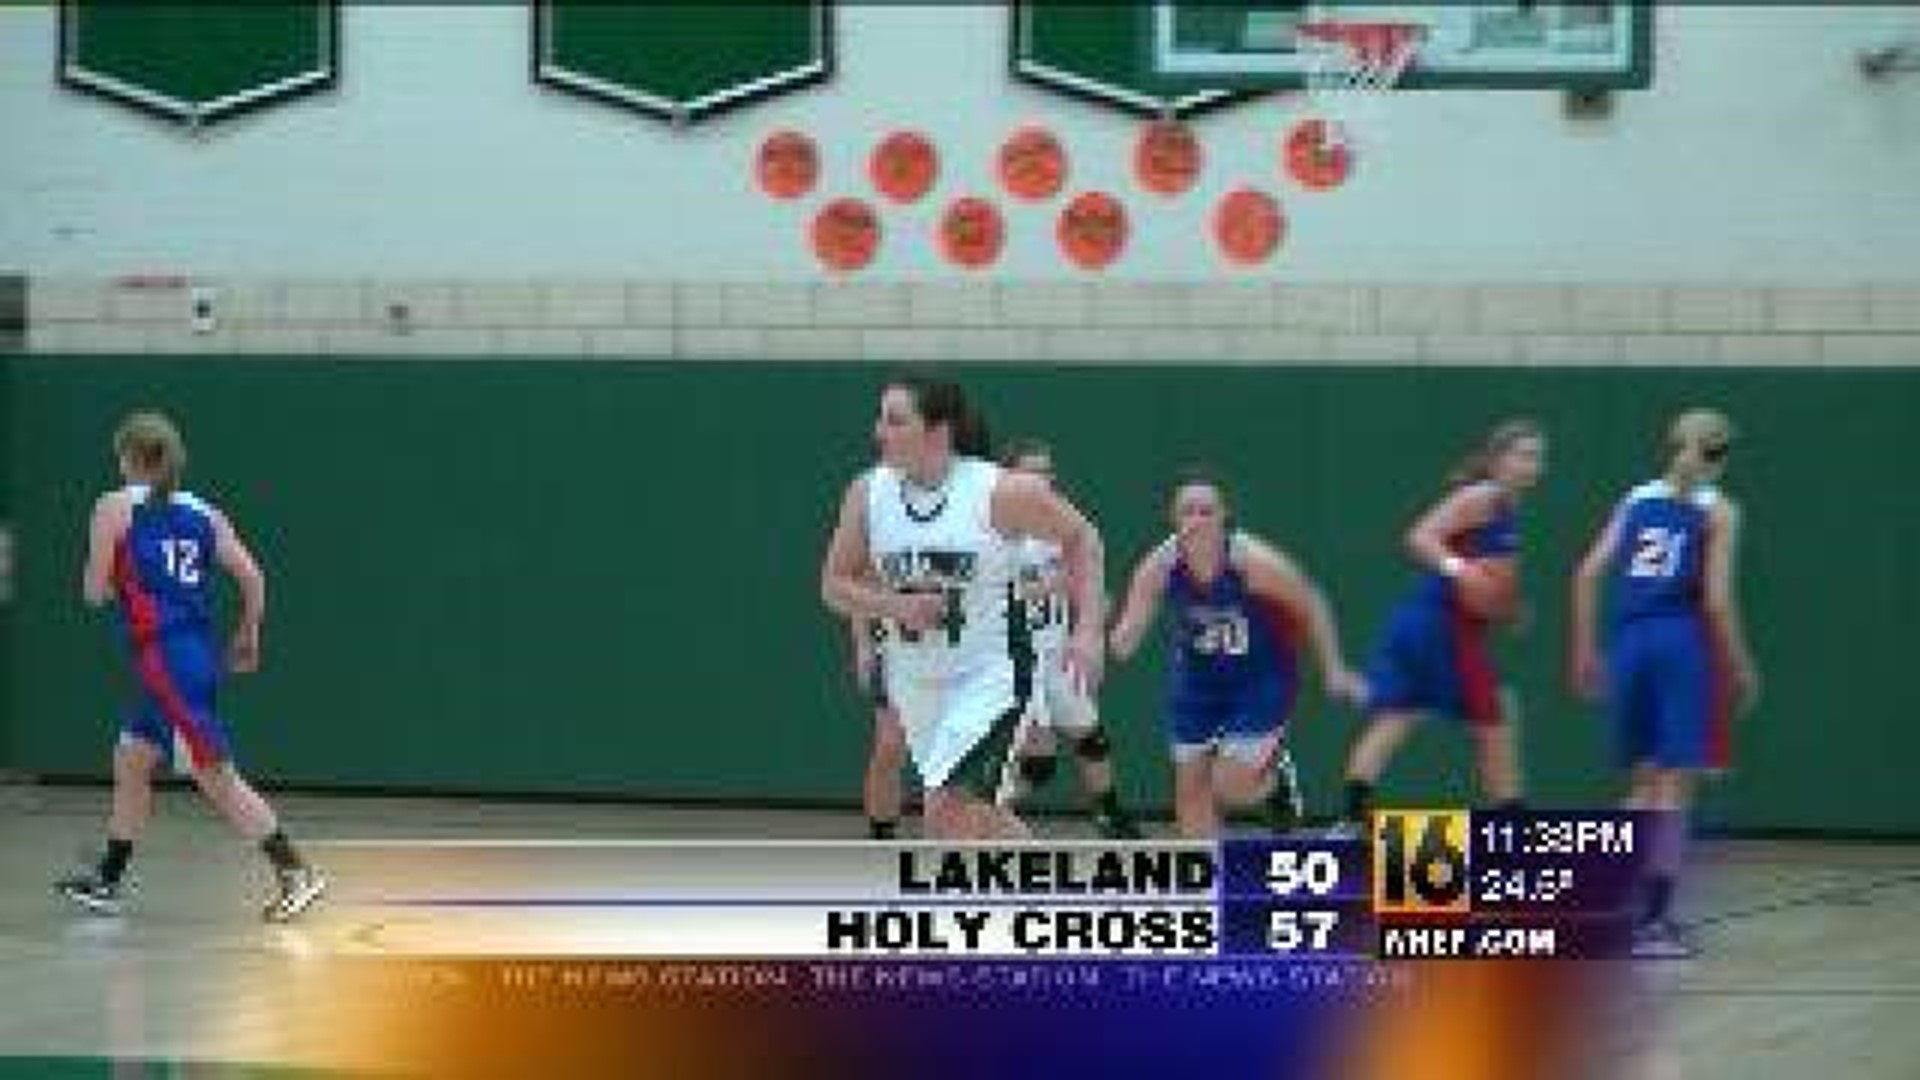 Lakeland vs Holy Cross